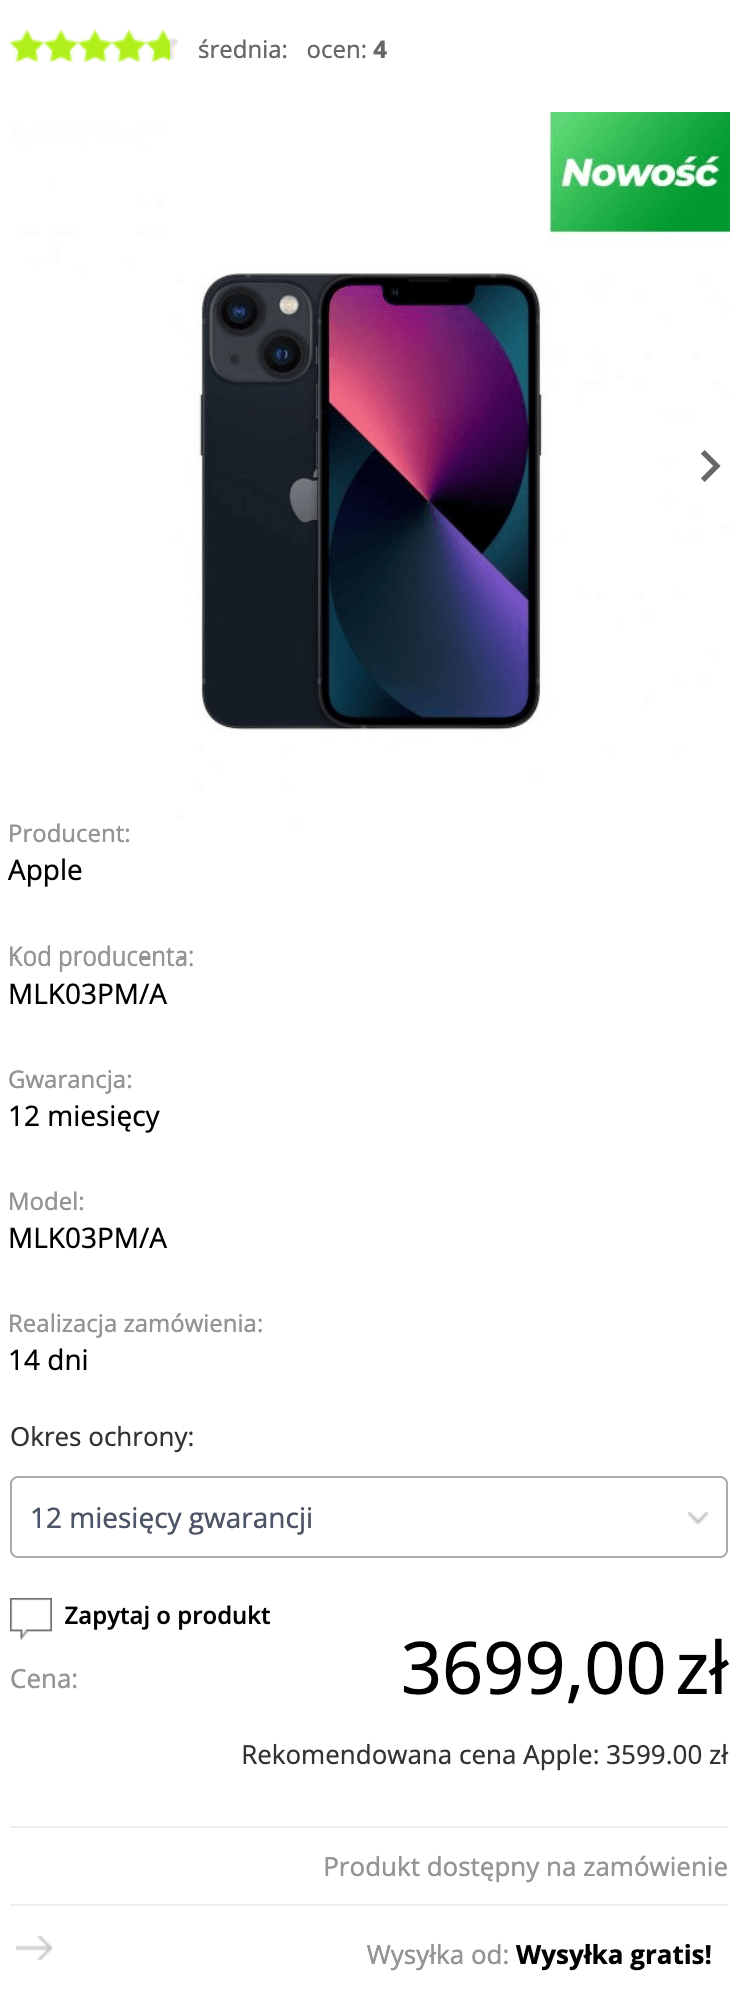 Apple iPhone 13 mini 128GB Północ (Midnight) - MLK03PM/A